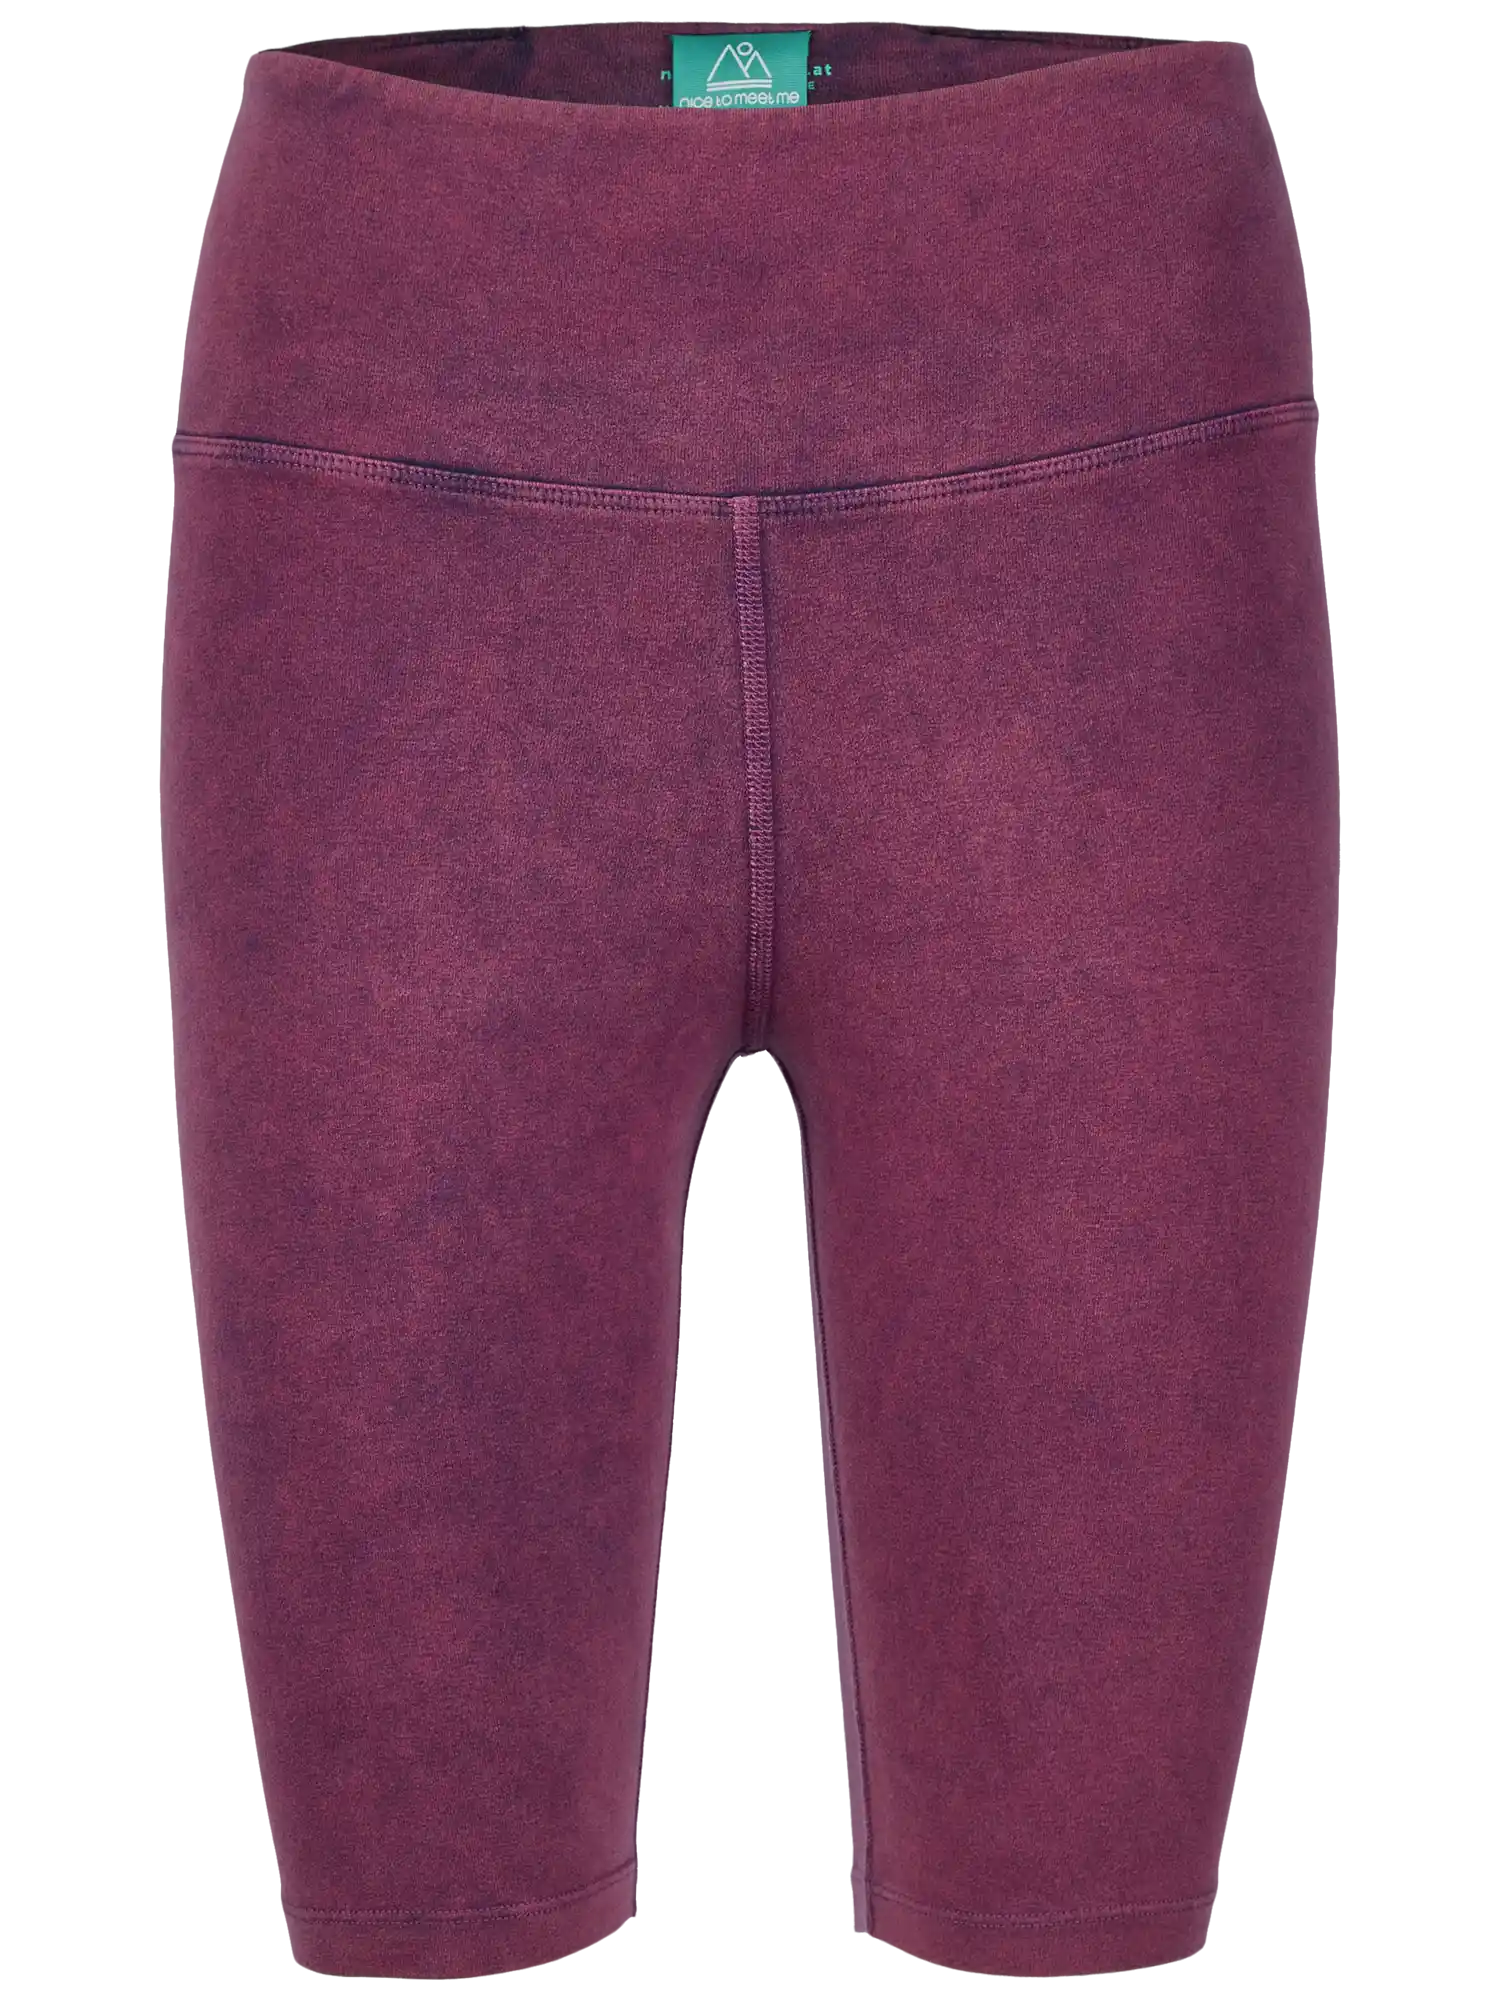 Yoga Biker Shorts handgefärbt aus Biobaumwolle in Violett